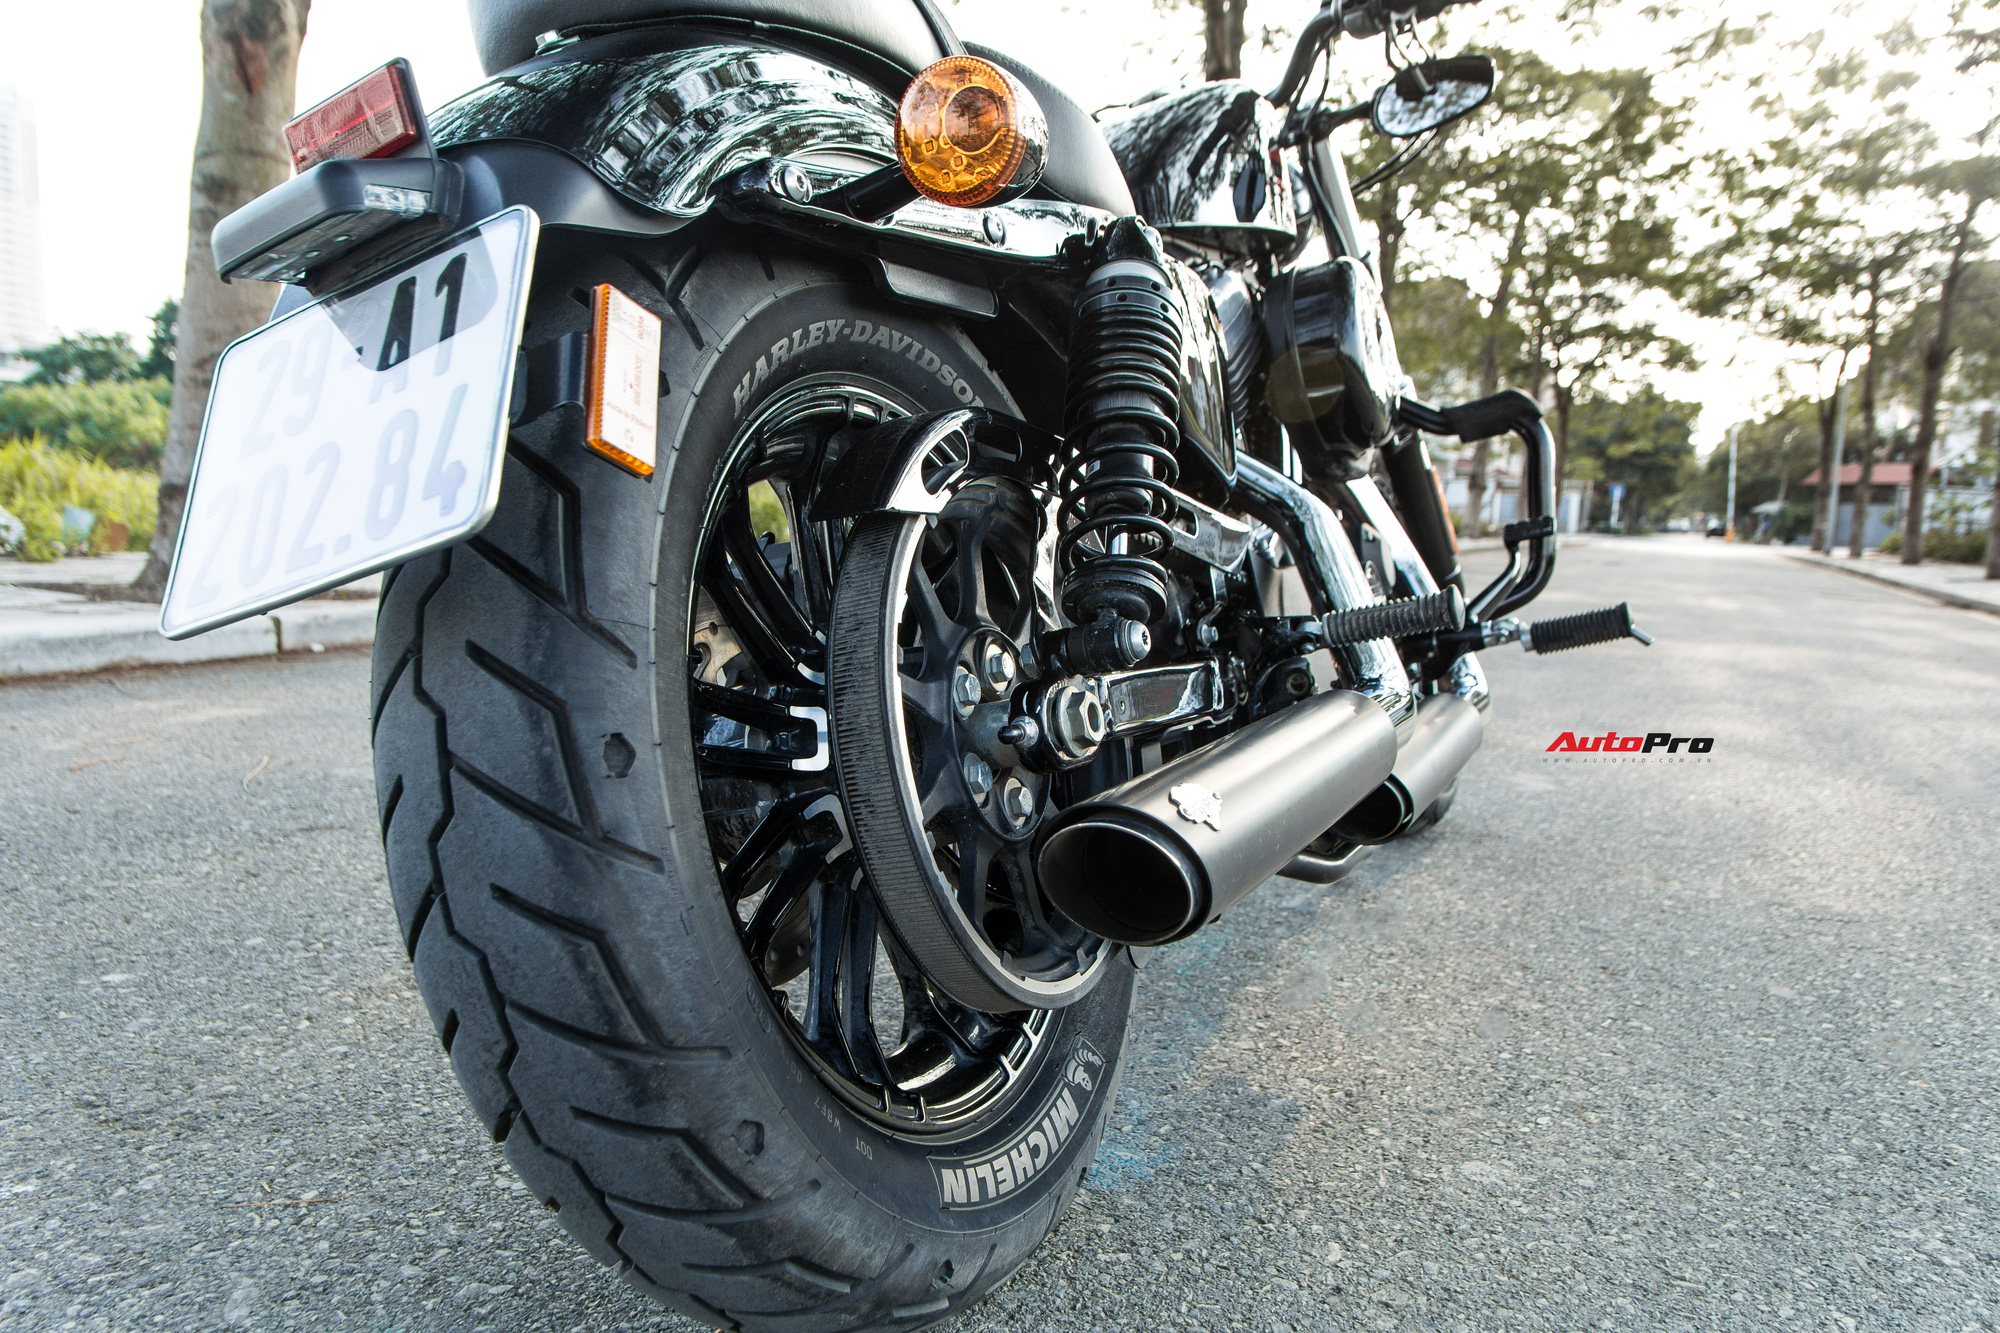 Chi tiết các mẫu xe HarleyDavidson 2021 vừa ra mắt tại Việt Nam